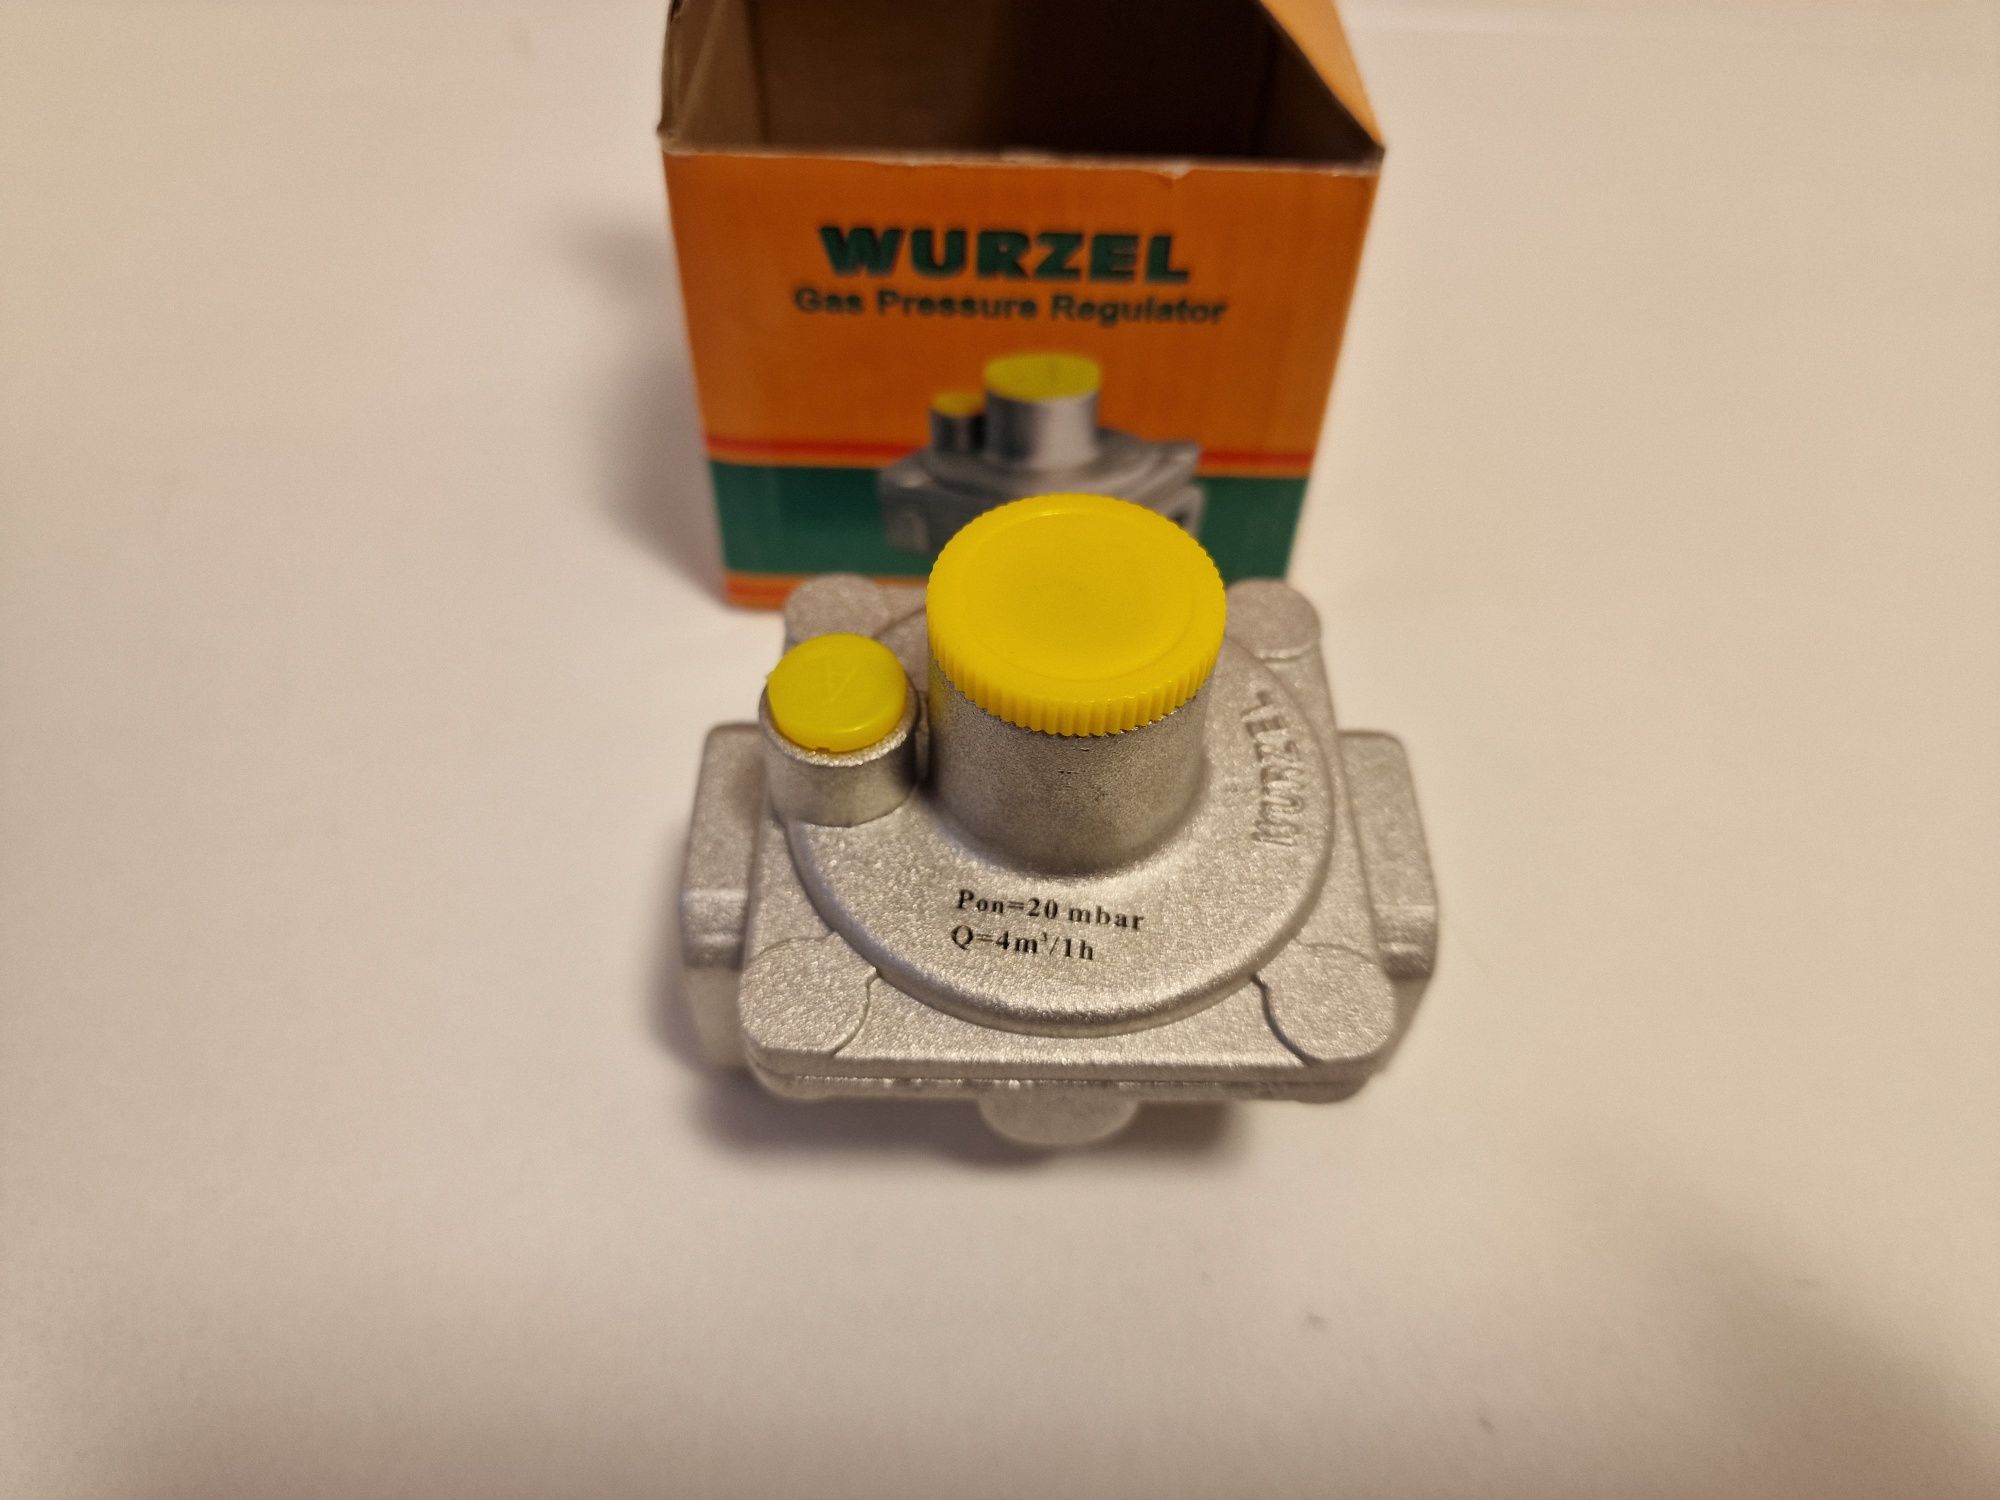 Regulador de gaz 1/2 Wurzel